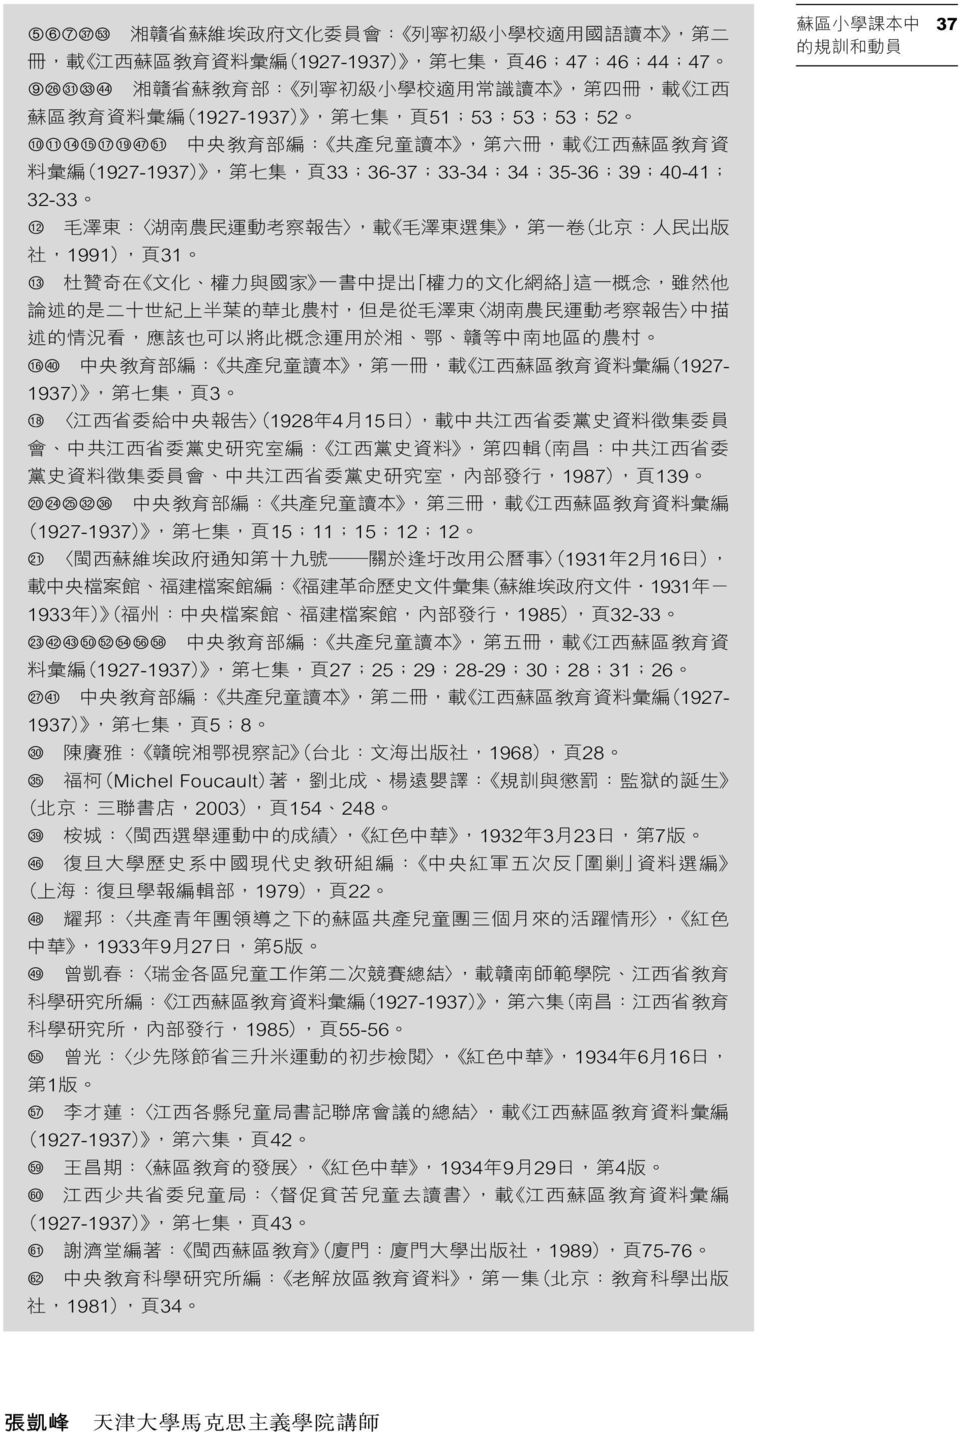 農 民 運 動 考 察 報 告, 載 毛 澤 東 選 集, 第 一 卷 ( 北 京 : 人 民 出 版 社,1991), 頁 31 bn 杜 贊 奇 在 文 化 權 力 與 國 家 一 書 中 提 出 權 力 的 文 化 網 絡 這 一 概 念, 雖 然 他 論 述 的 是 二 十 世 紀 上 半 葉 的 華 北 農 村, 但 是 從 毛 澤 東 湖 南 農 民 運 動 考 察 報 告 中 描